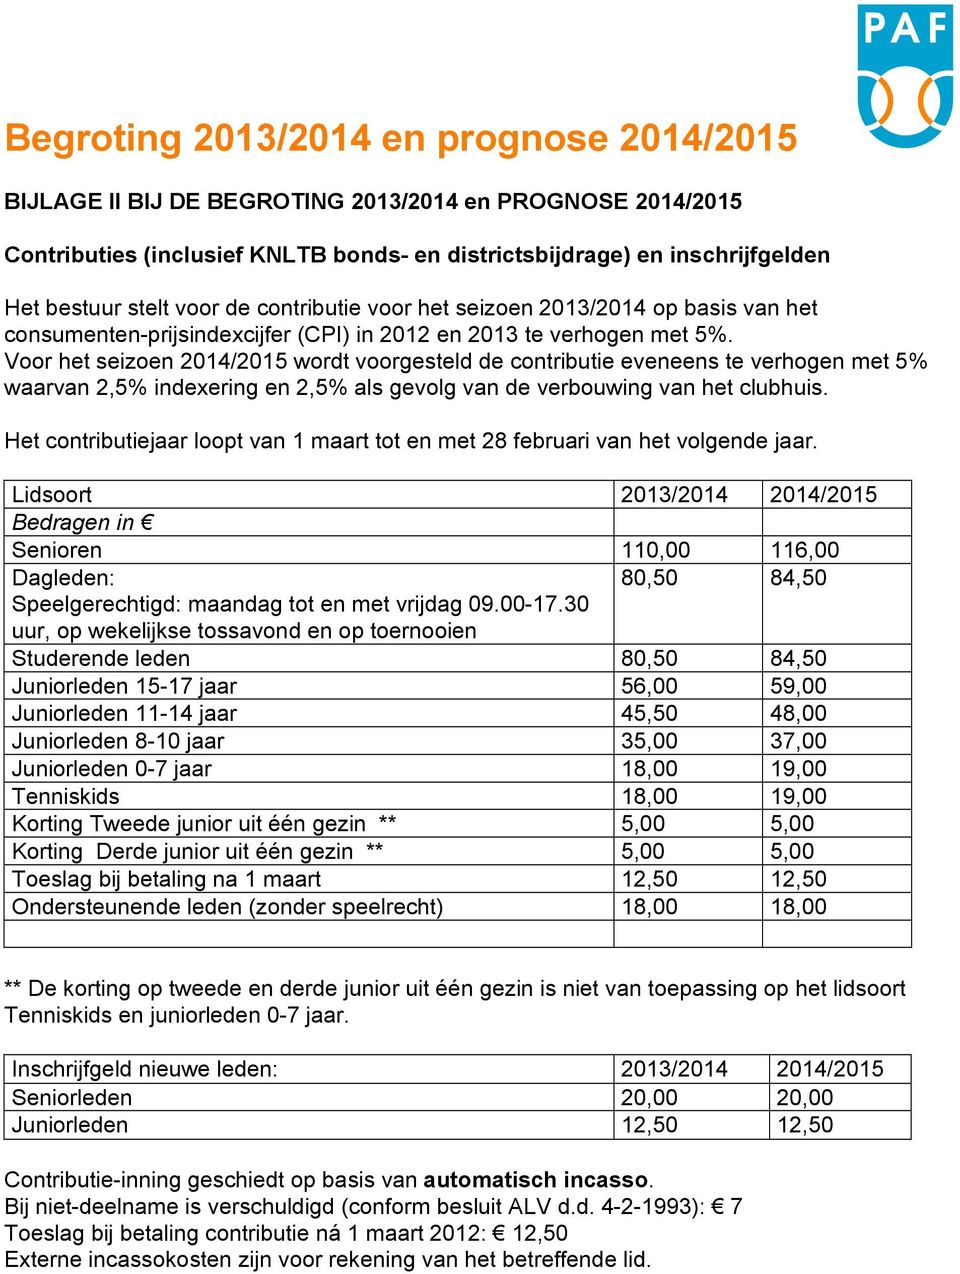 Voor het seizoen 2014/2015 wordt voorgesteld de contributie eveneens te verhogen met 5% waarvan 2,5% indexering en 2,5% als gevolg van de verbouwing van het clubhuis.